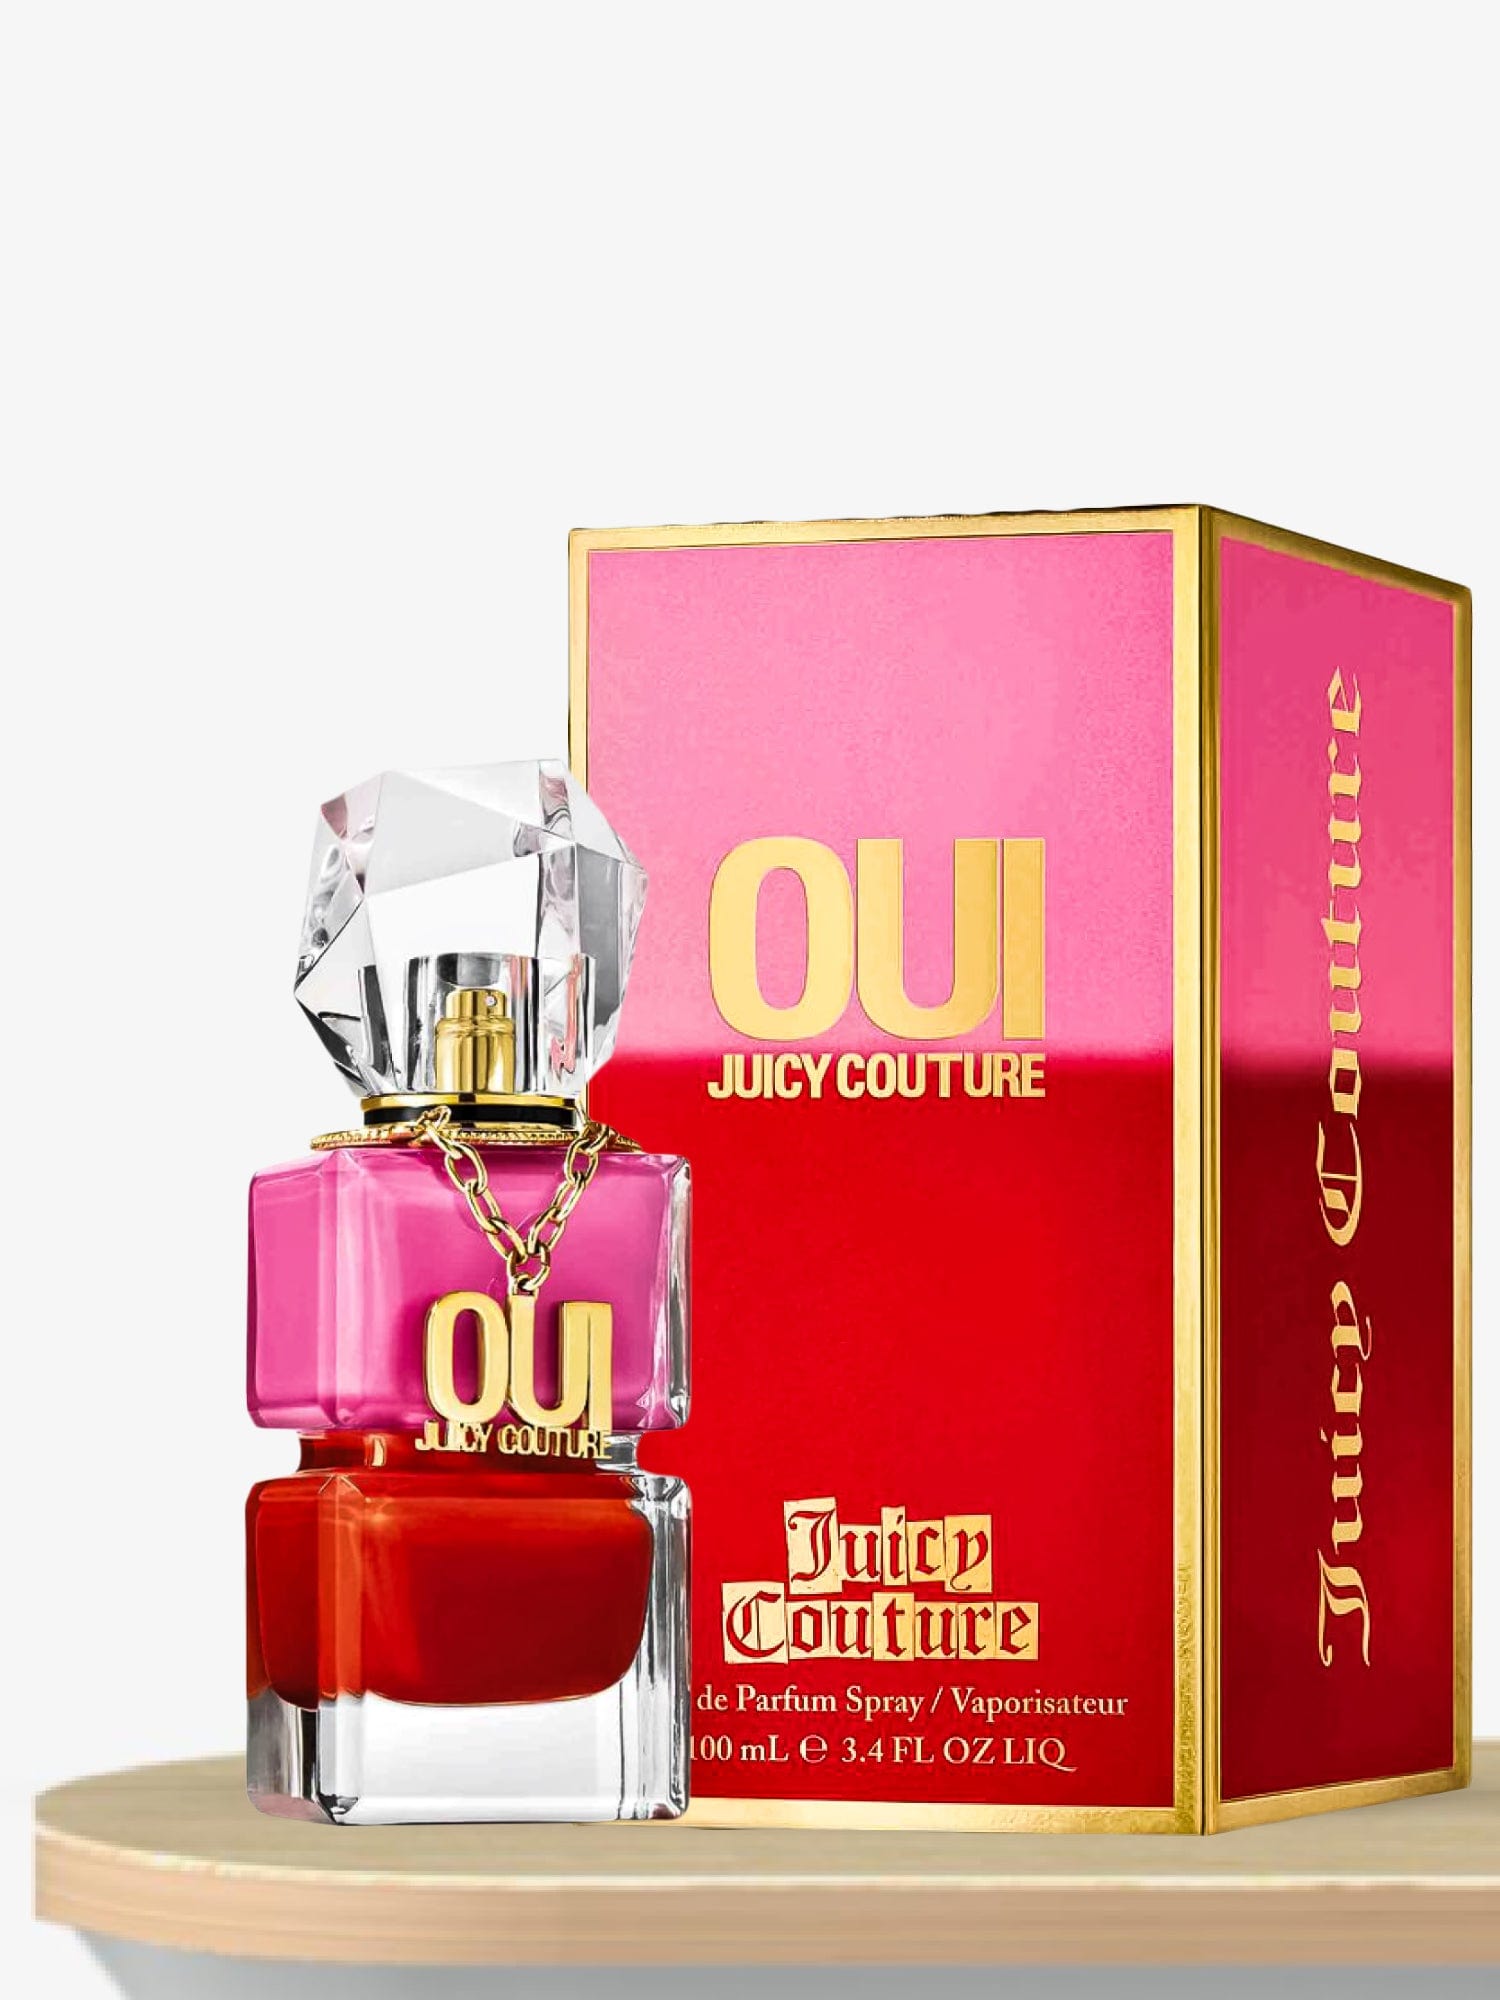 Juicy Couture Oui Juicy Couture Eau de Parfum 100 mL / Female